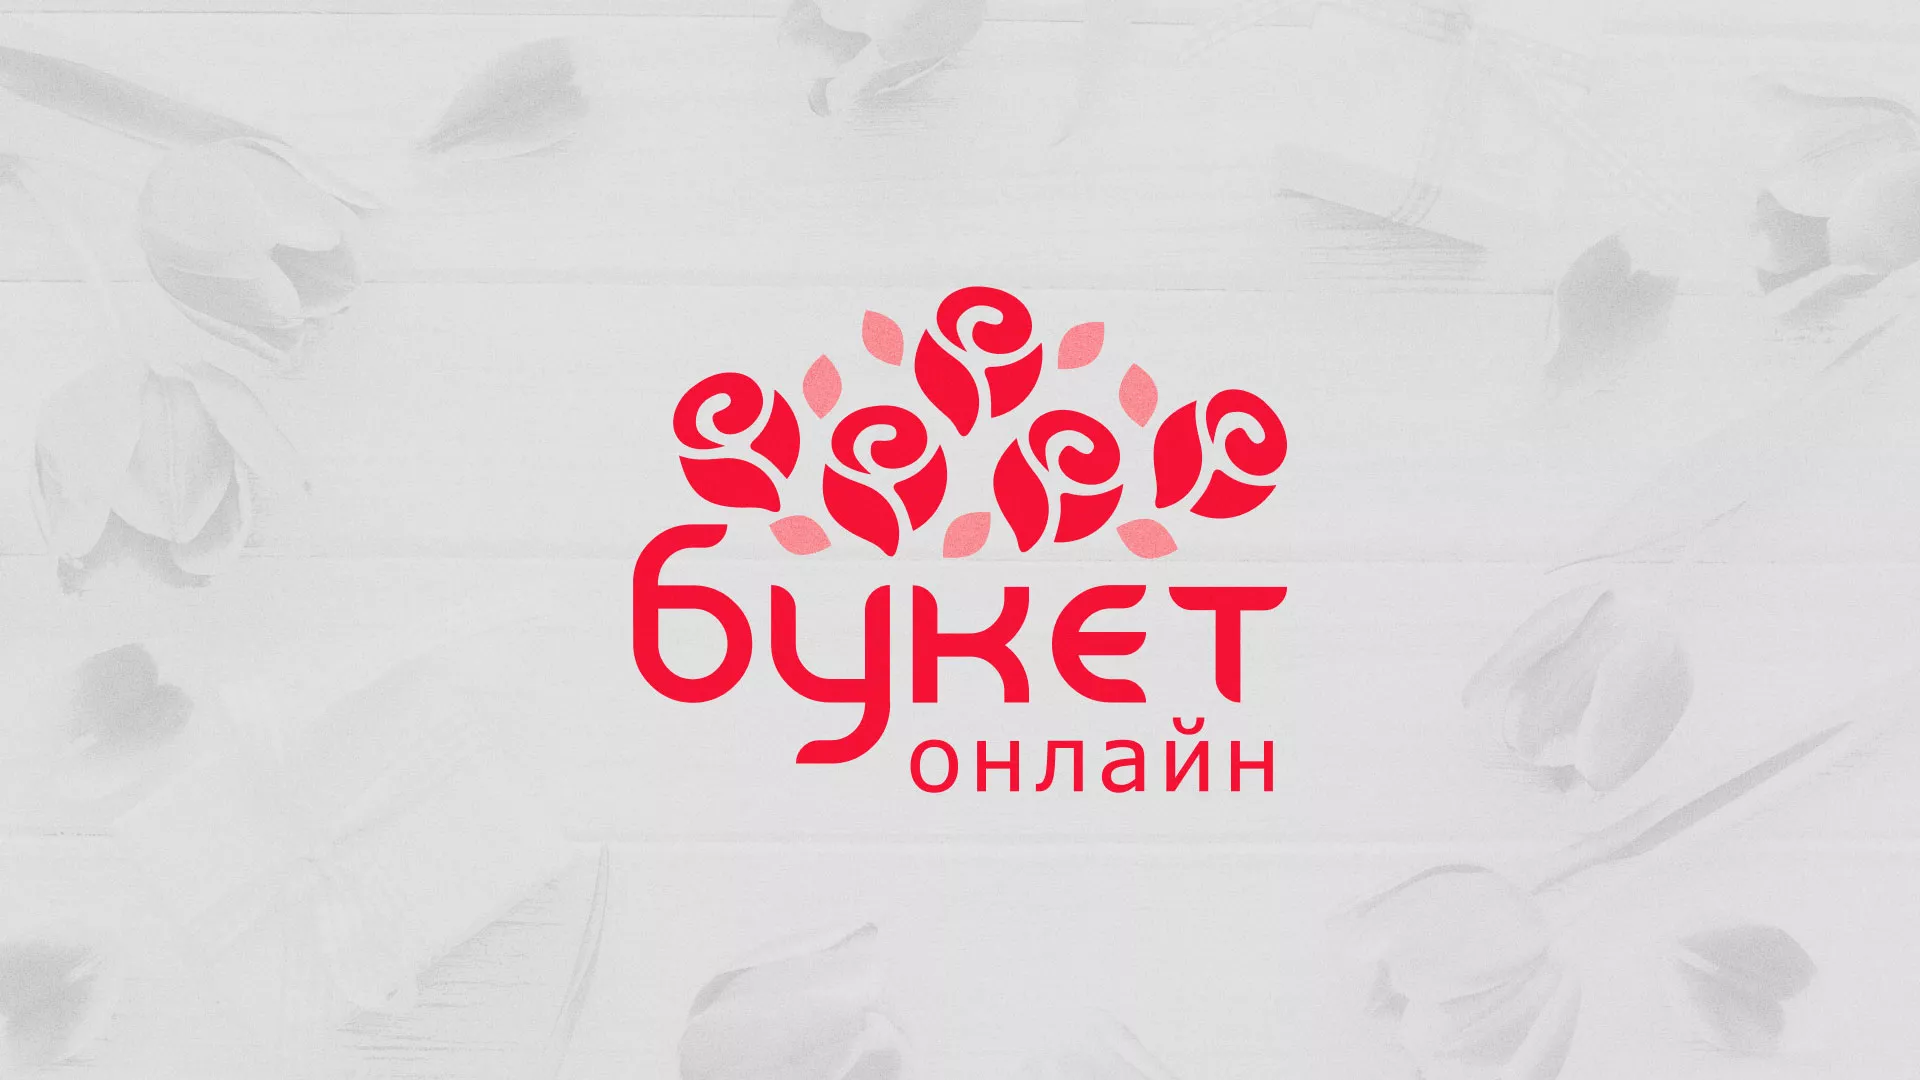 Создание интернет-магазина «Букет-онлайн» по цветам в Ярцево